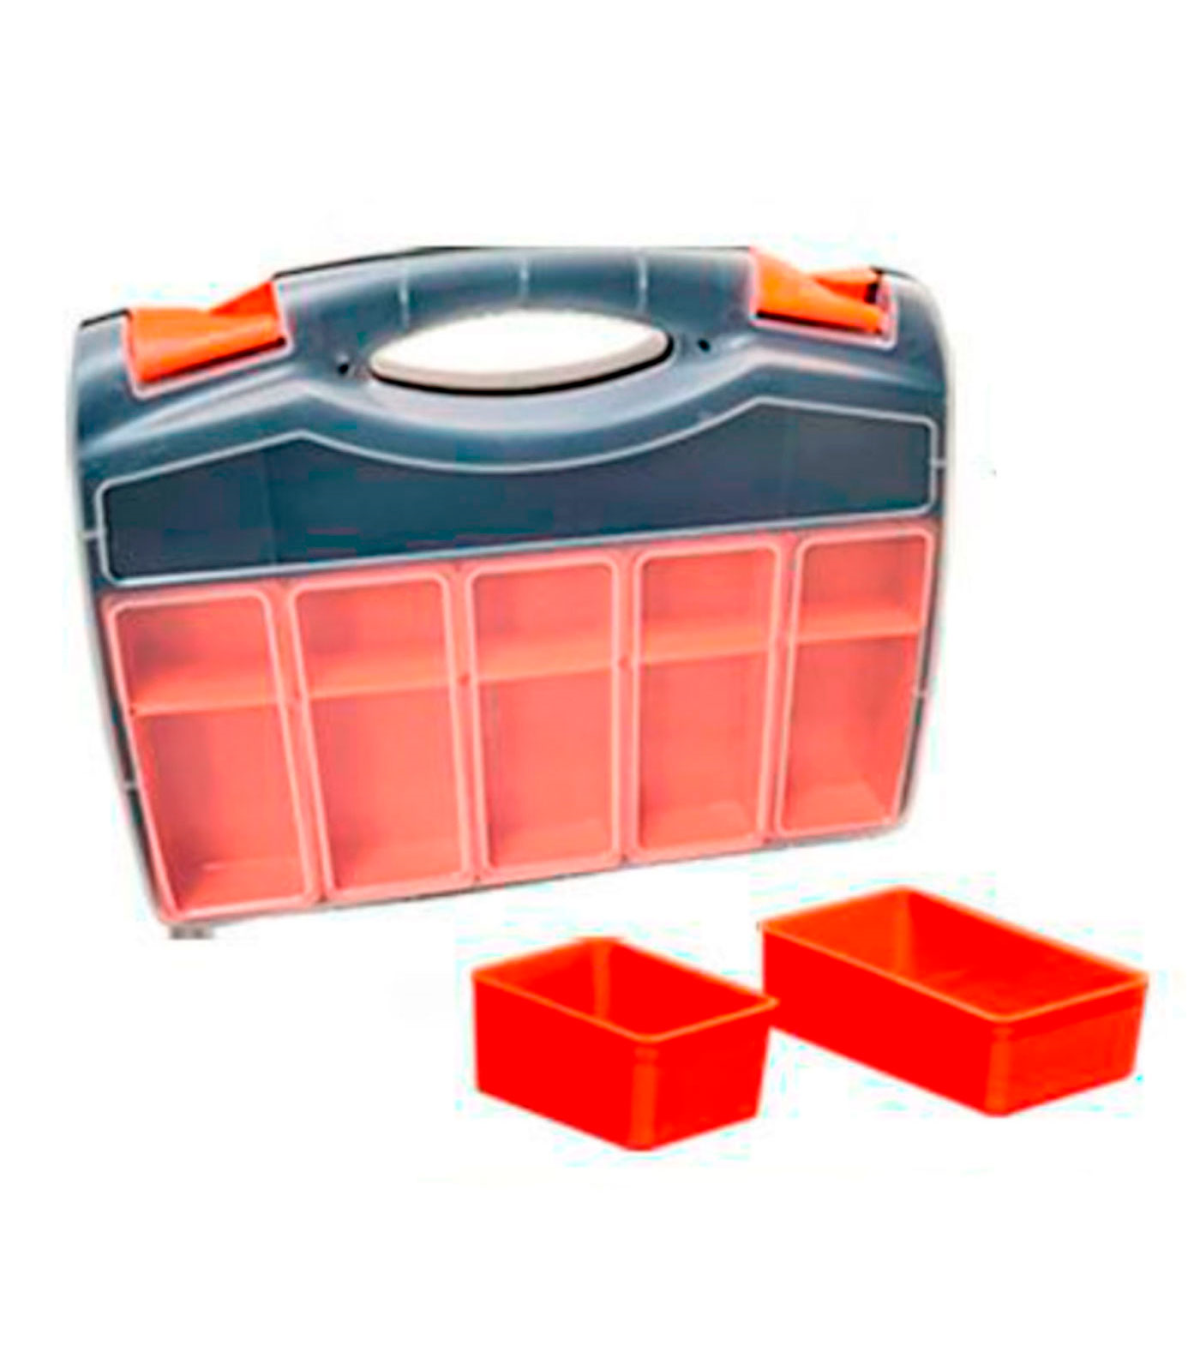 Caja organizadora de plástico de 37 x 30 x 8 cm con 2 compartimentos y asa.  Organizador de herramientas para hogar o trabajo. Ma